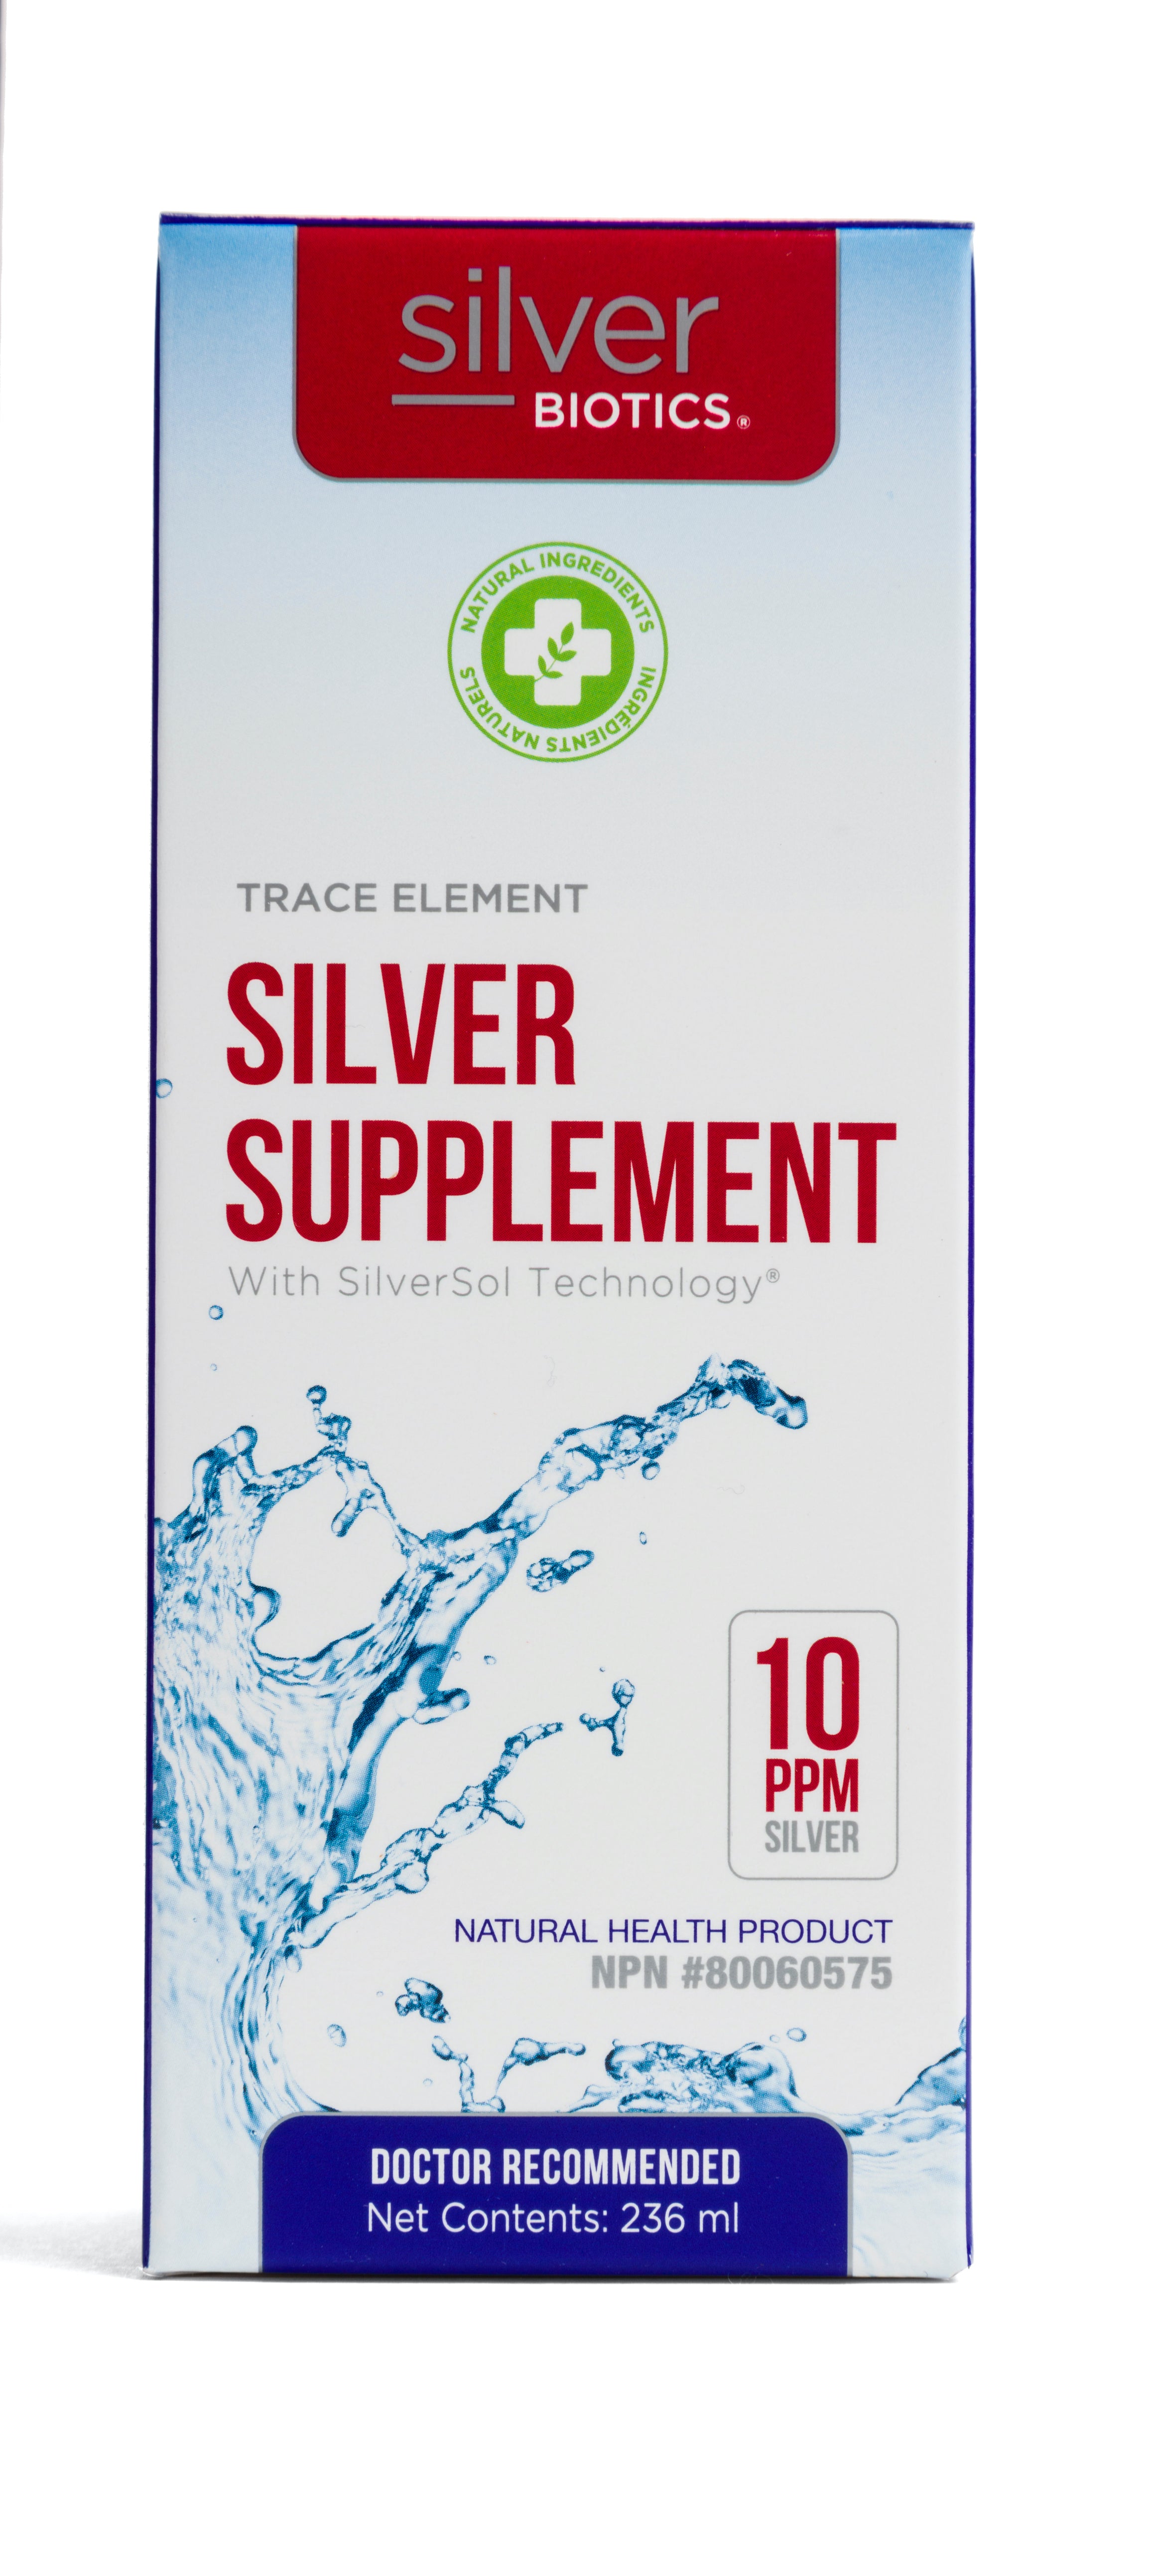 Silver Biotics Silver Supplement 236ml